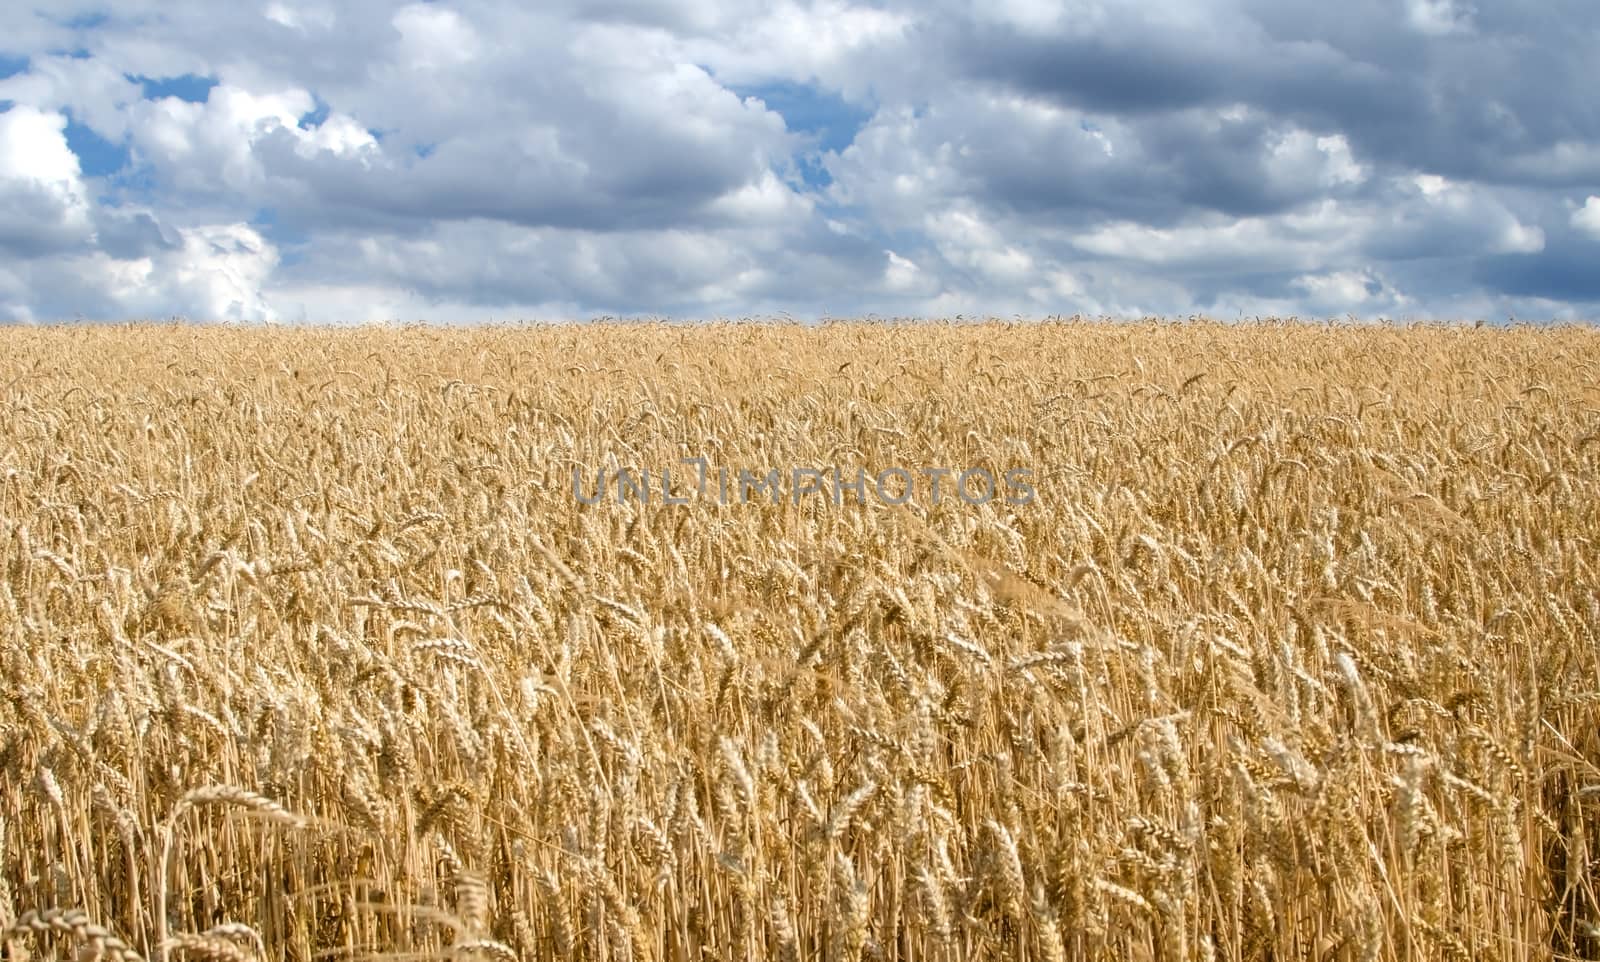 Grain field horizontal landscape by richpav